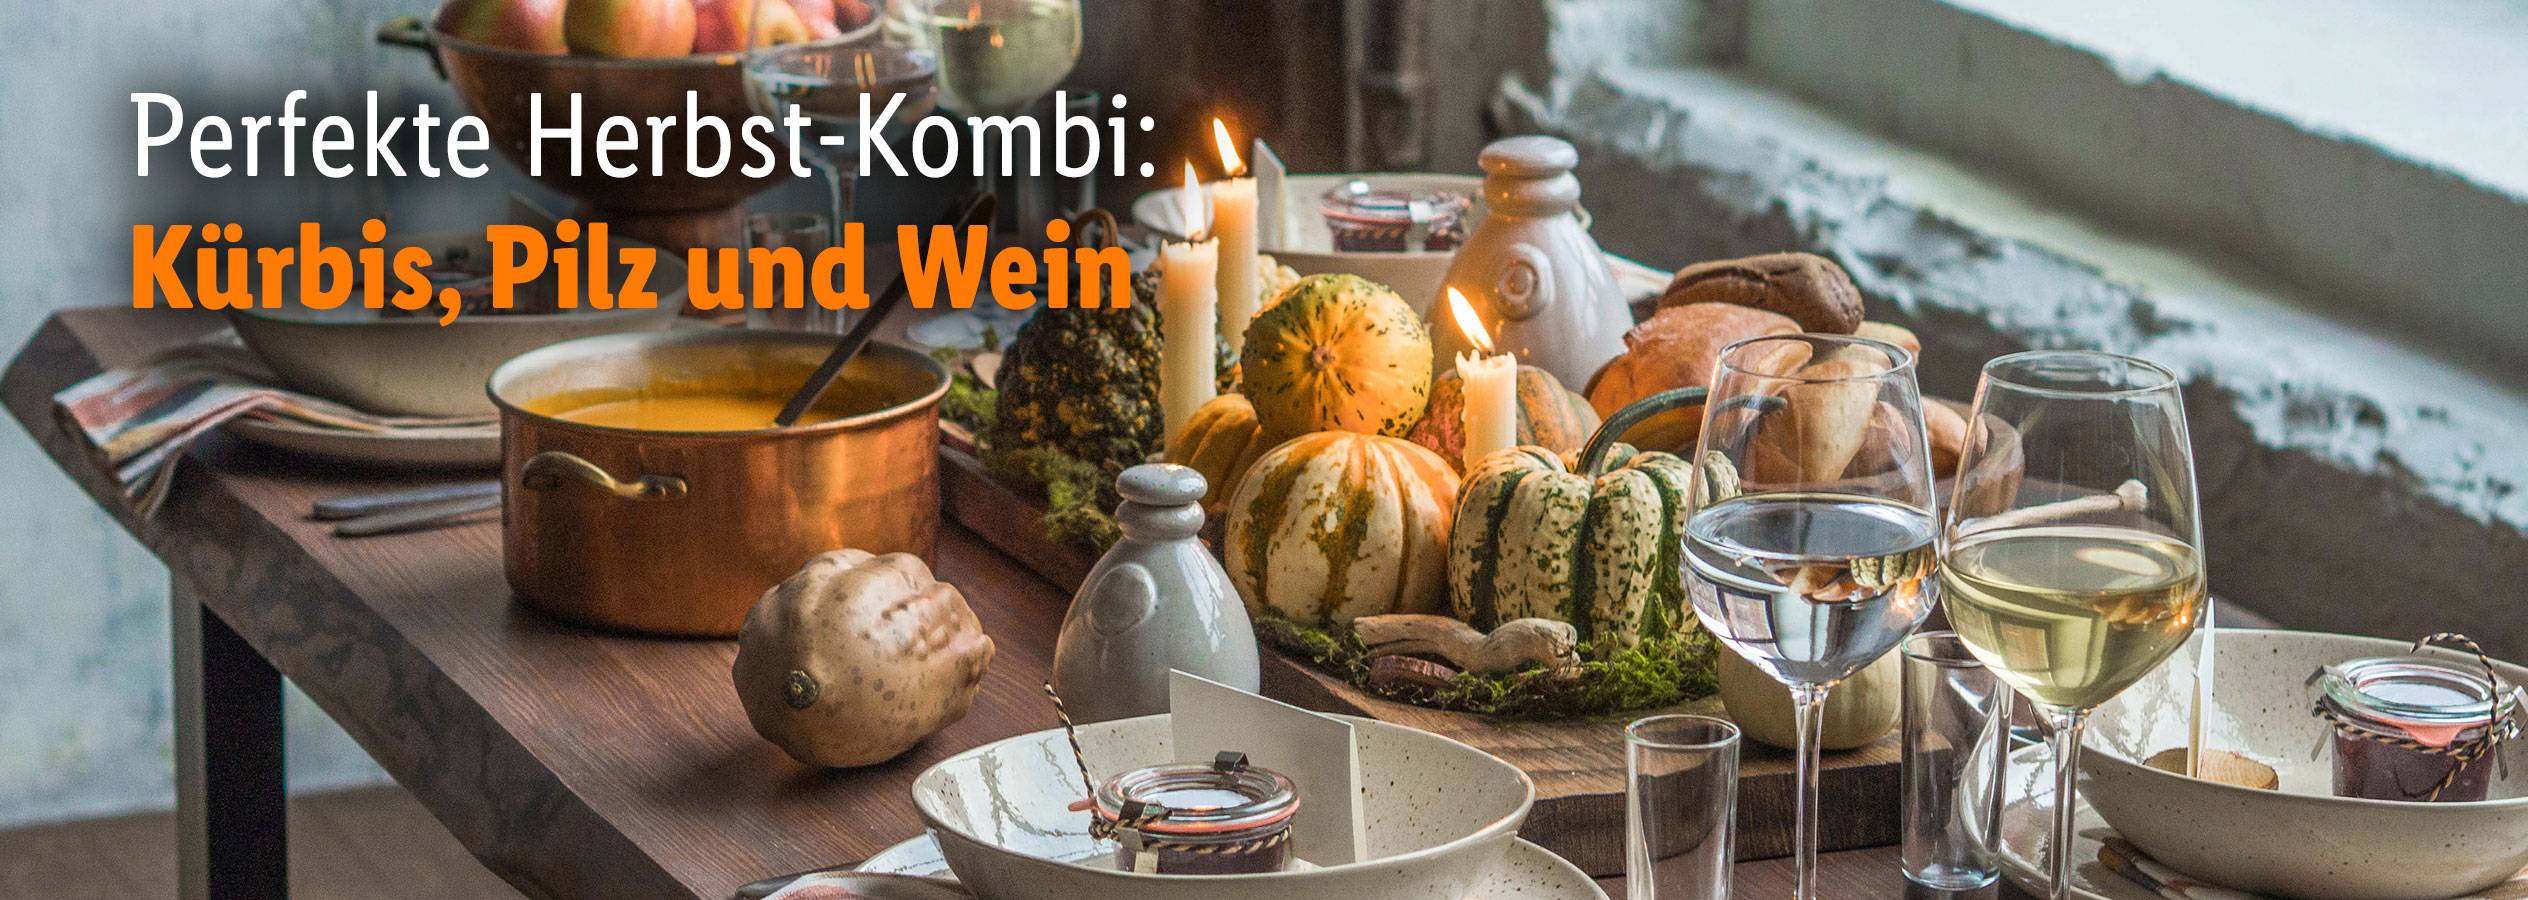 Kürbis, und Pilz Wein Herbst-Kombi: Perfekte